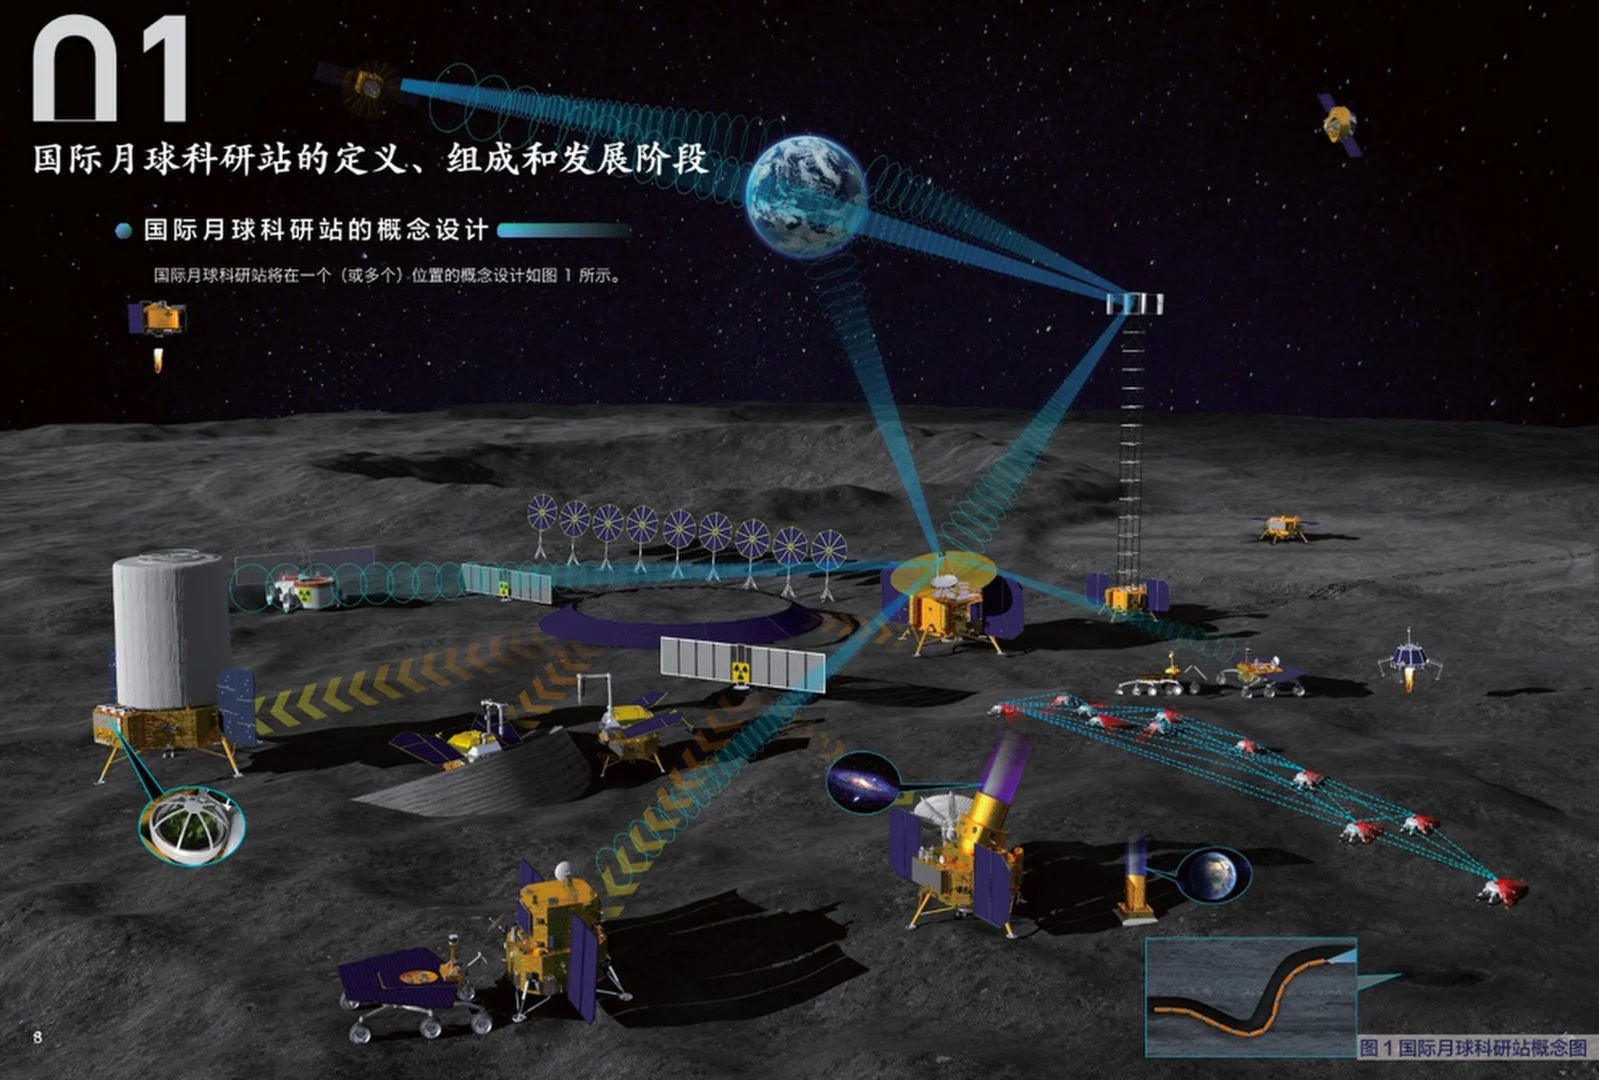 Bản vẽ Trạm Nghiên cứu Mặt trăng Quốc tế - cơ sở đang được Cơ quan Quản lý Vũ trụ Quốc gia Trung Quốc và đối tác Nga Roscosmos phát triển. Ảnh: CNSA